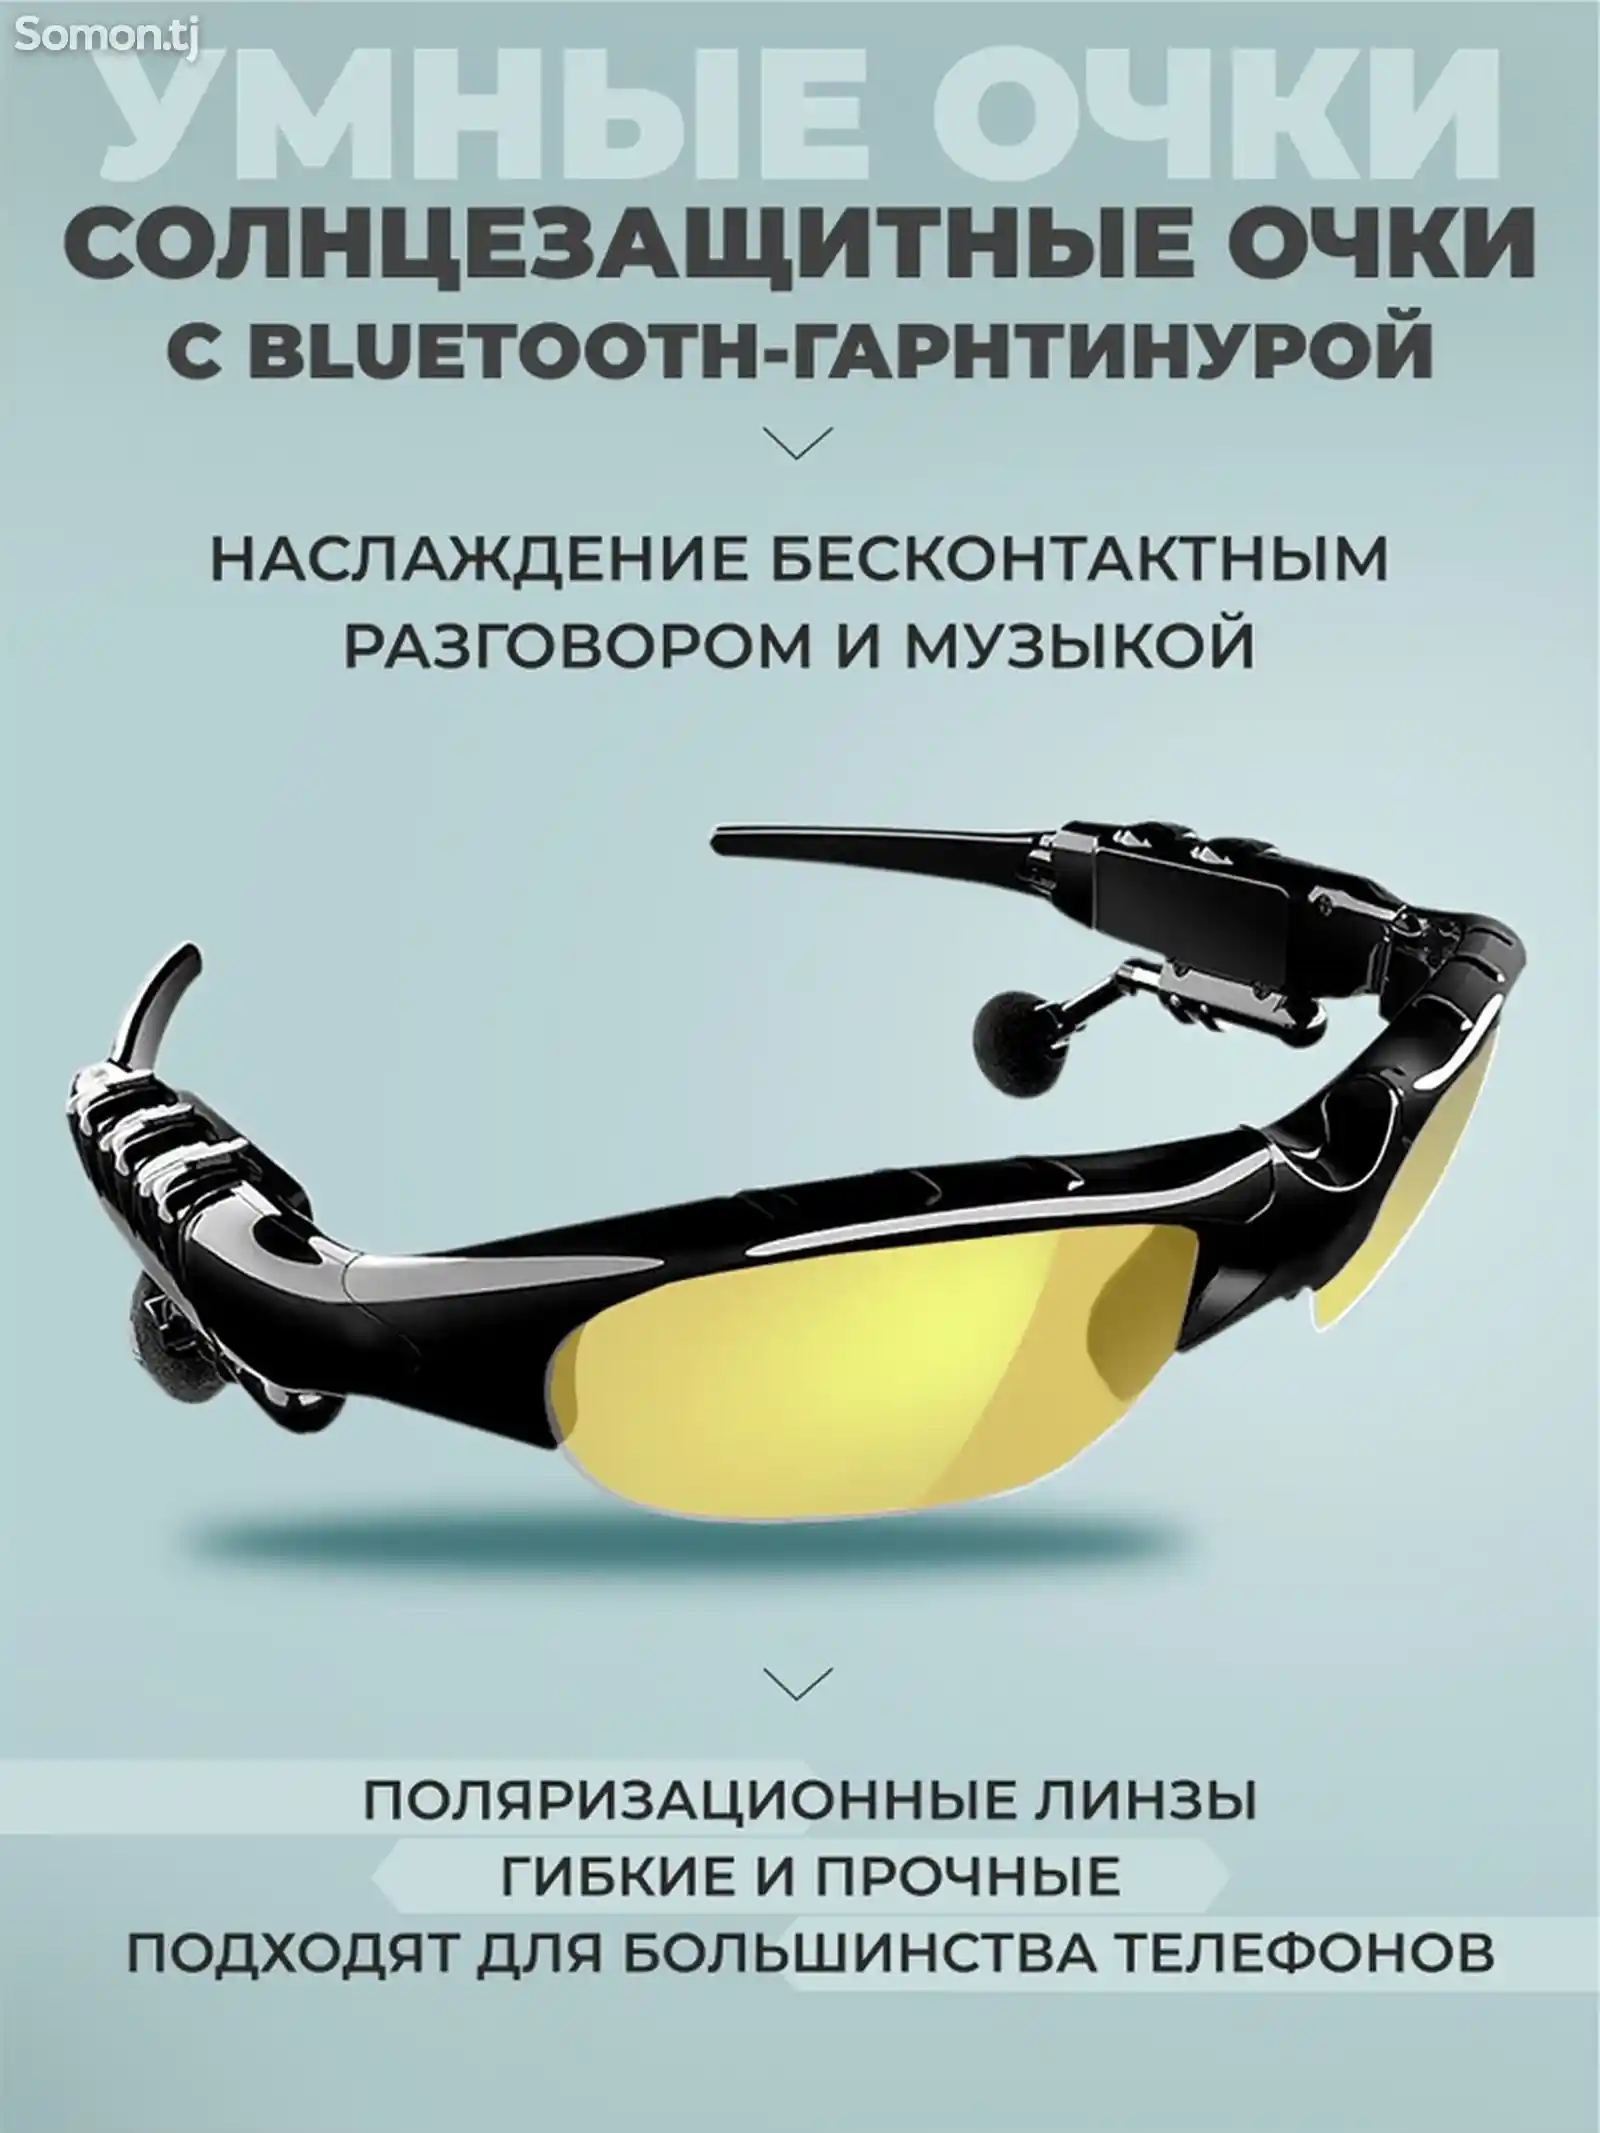 Умные очки с Bluetooth гарнитурой-3